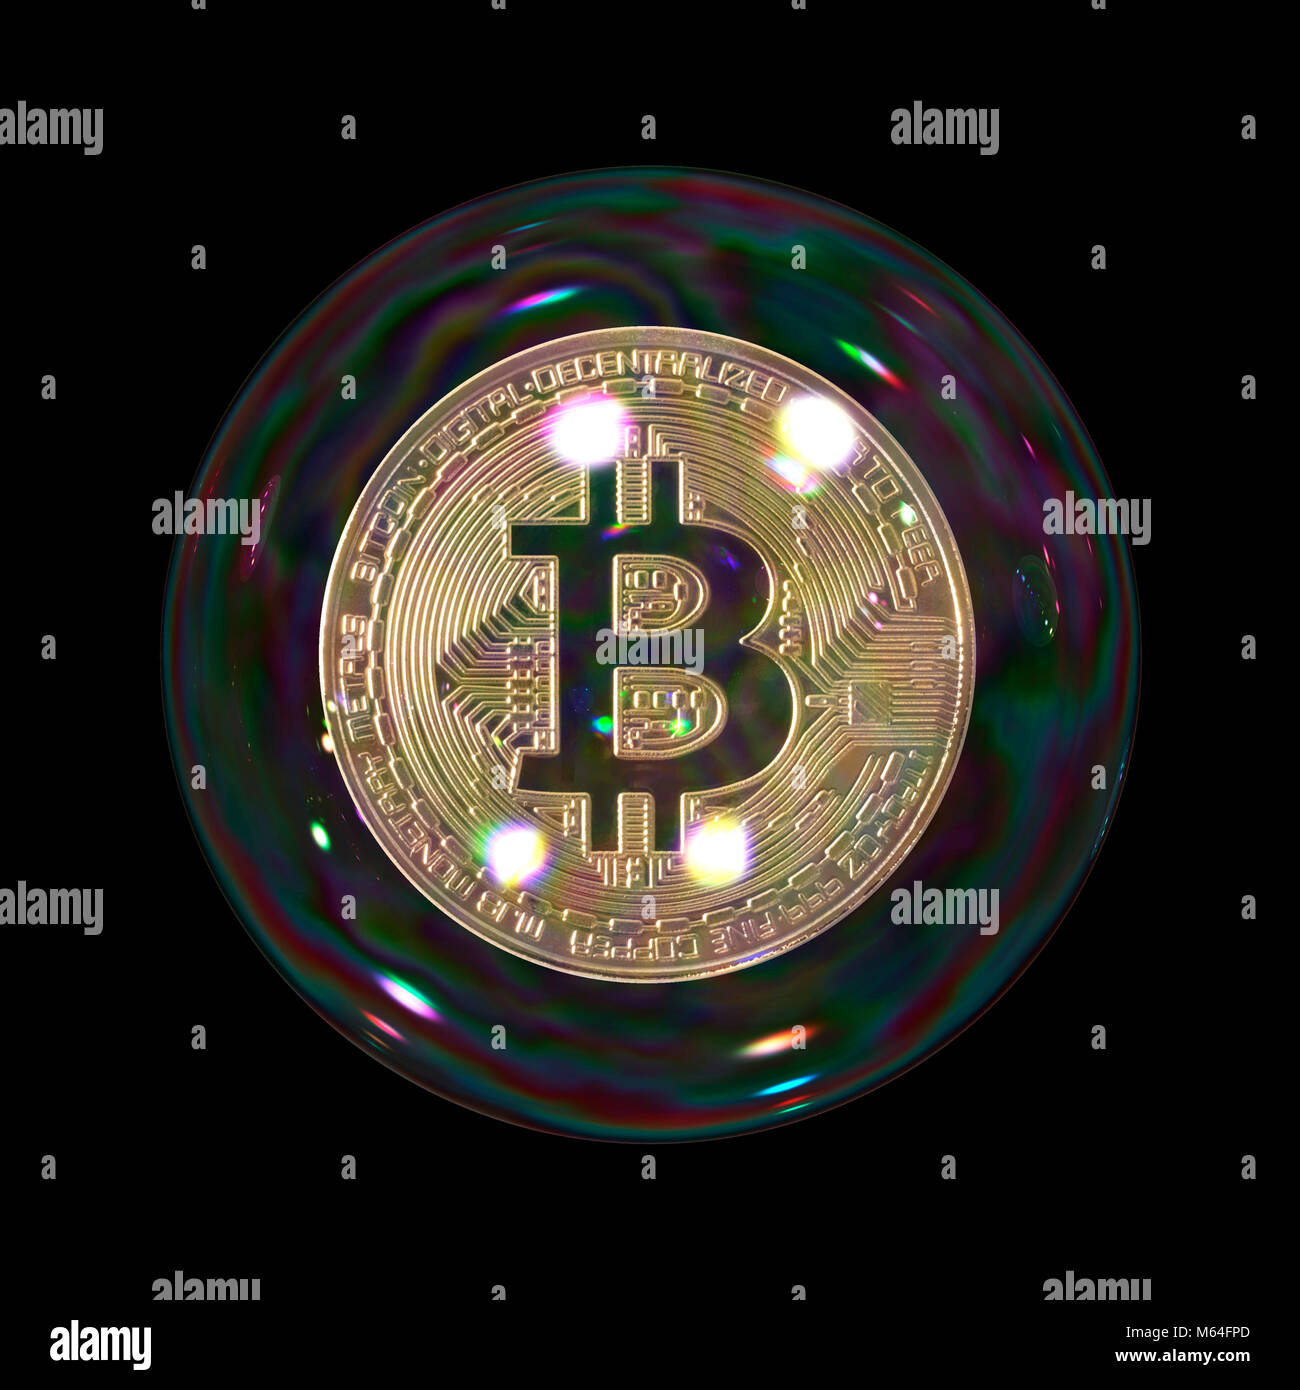 Burbuja Bitcoin sobre fondo negro liso, moneda de oro suspendidas en la burbuja que representa el concepto de ruptura y frágiles inversiones cryptocurrency digital Foto de stock